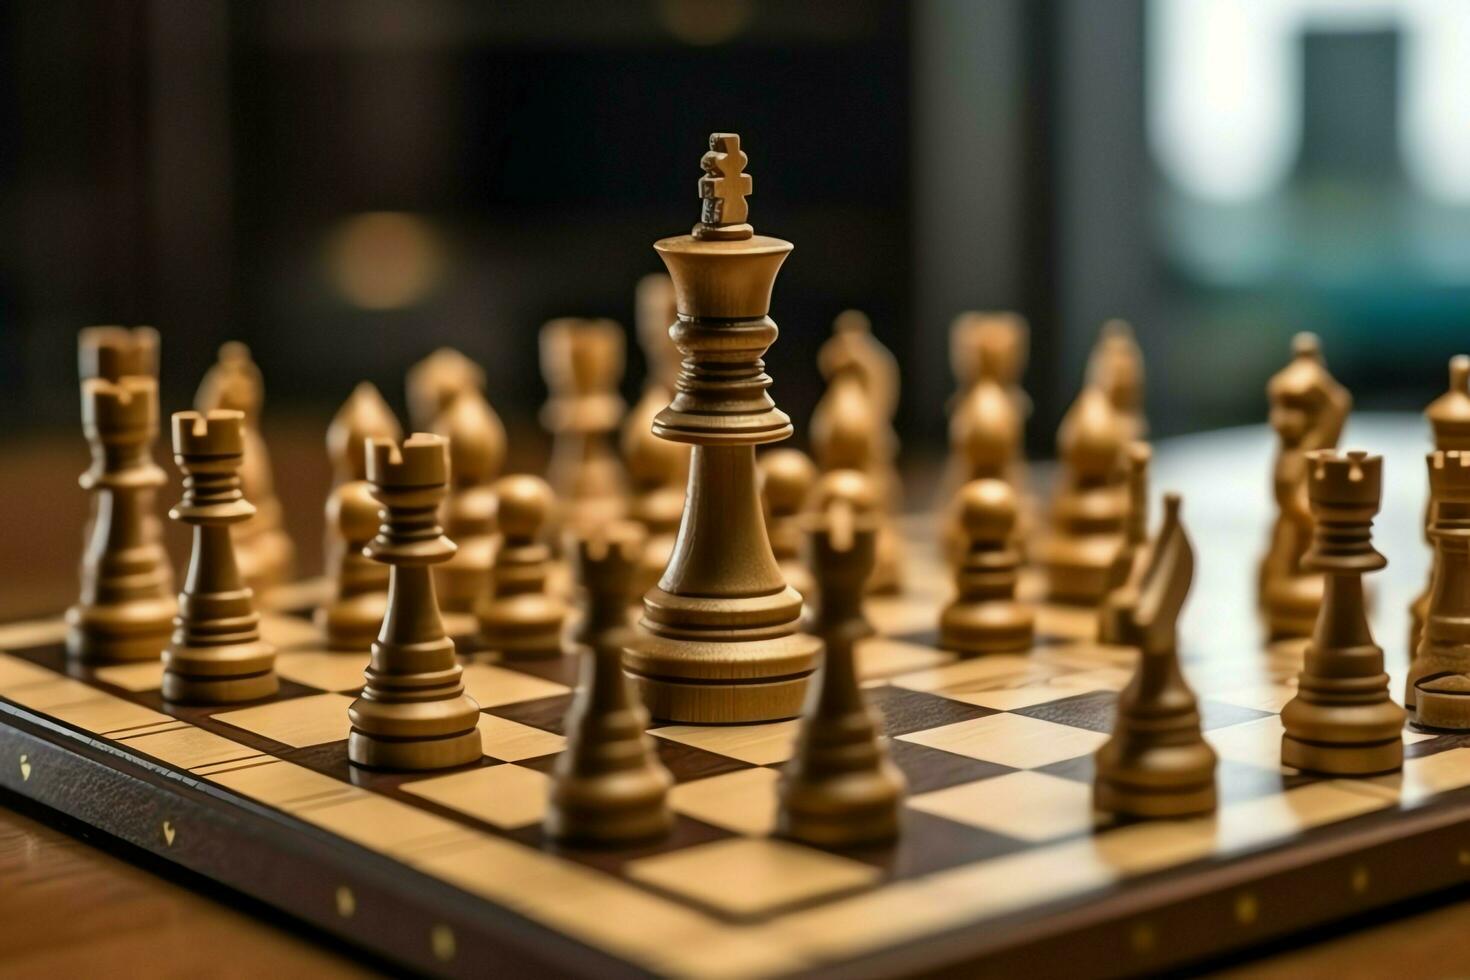 tabuleiro de xadrez com o negócio estratégia, tática e concorrência do uma xadrez jogo. o negócio e Liderança conceito de ai gerado foto